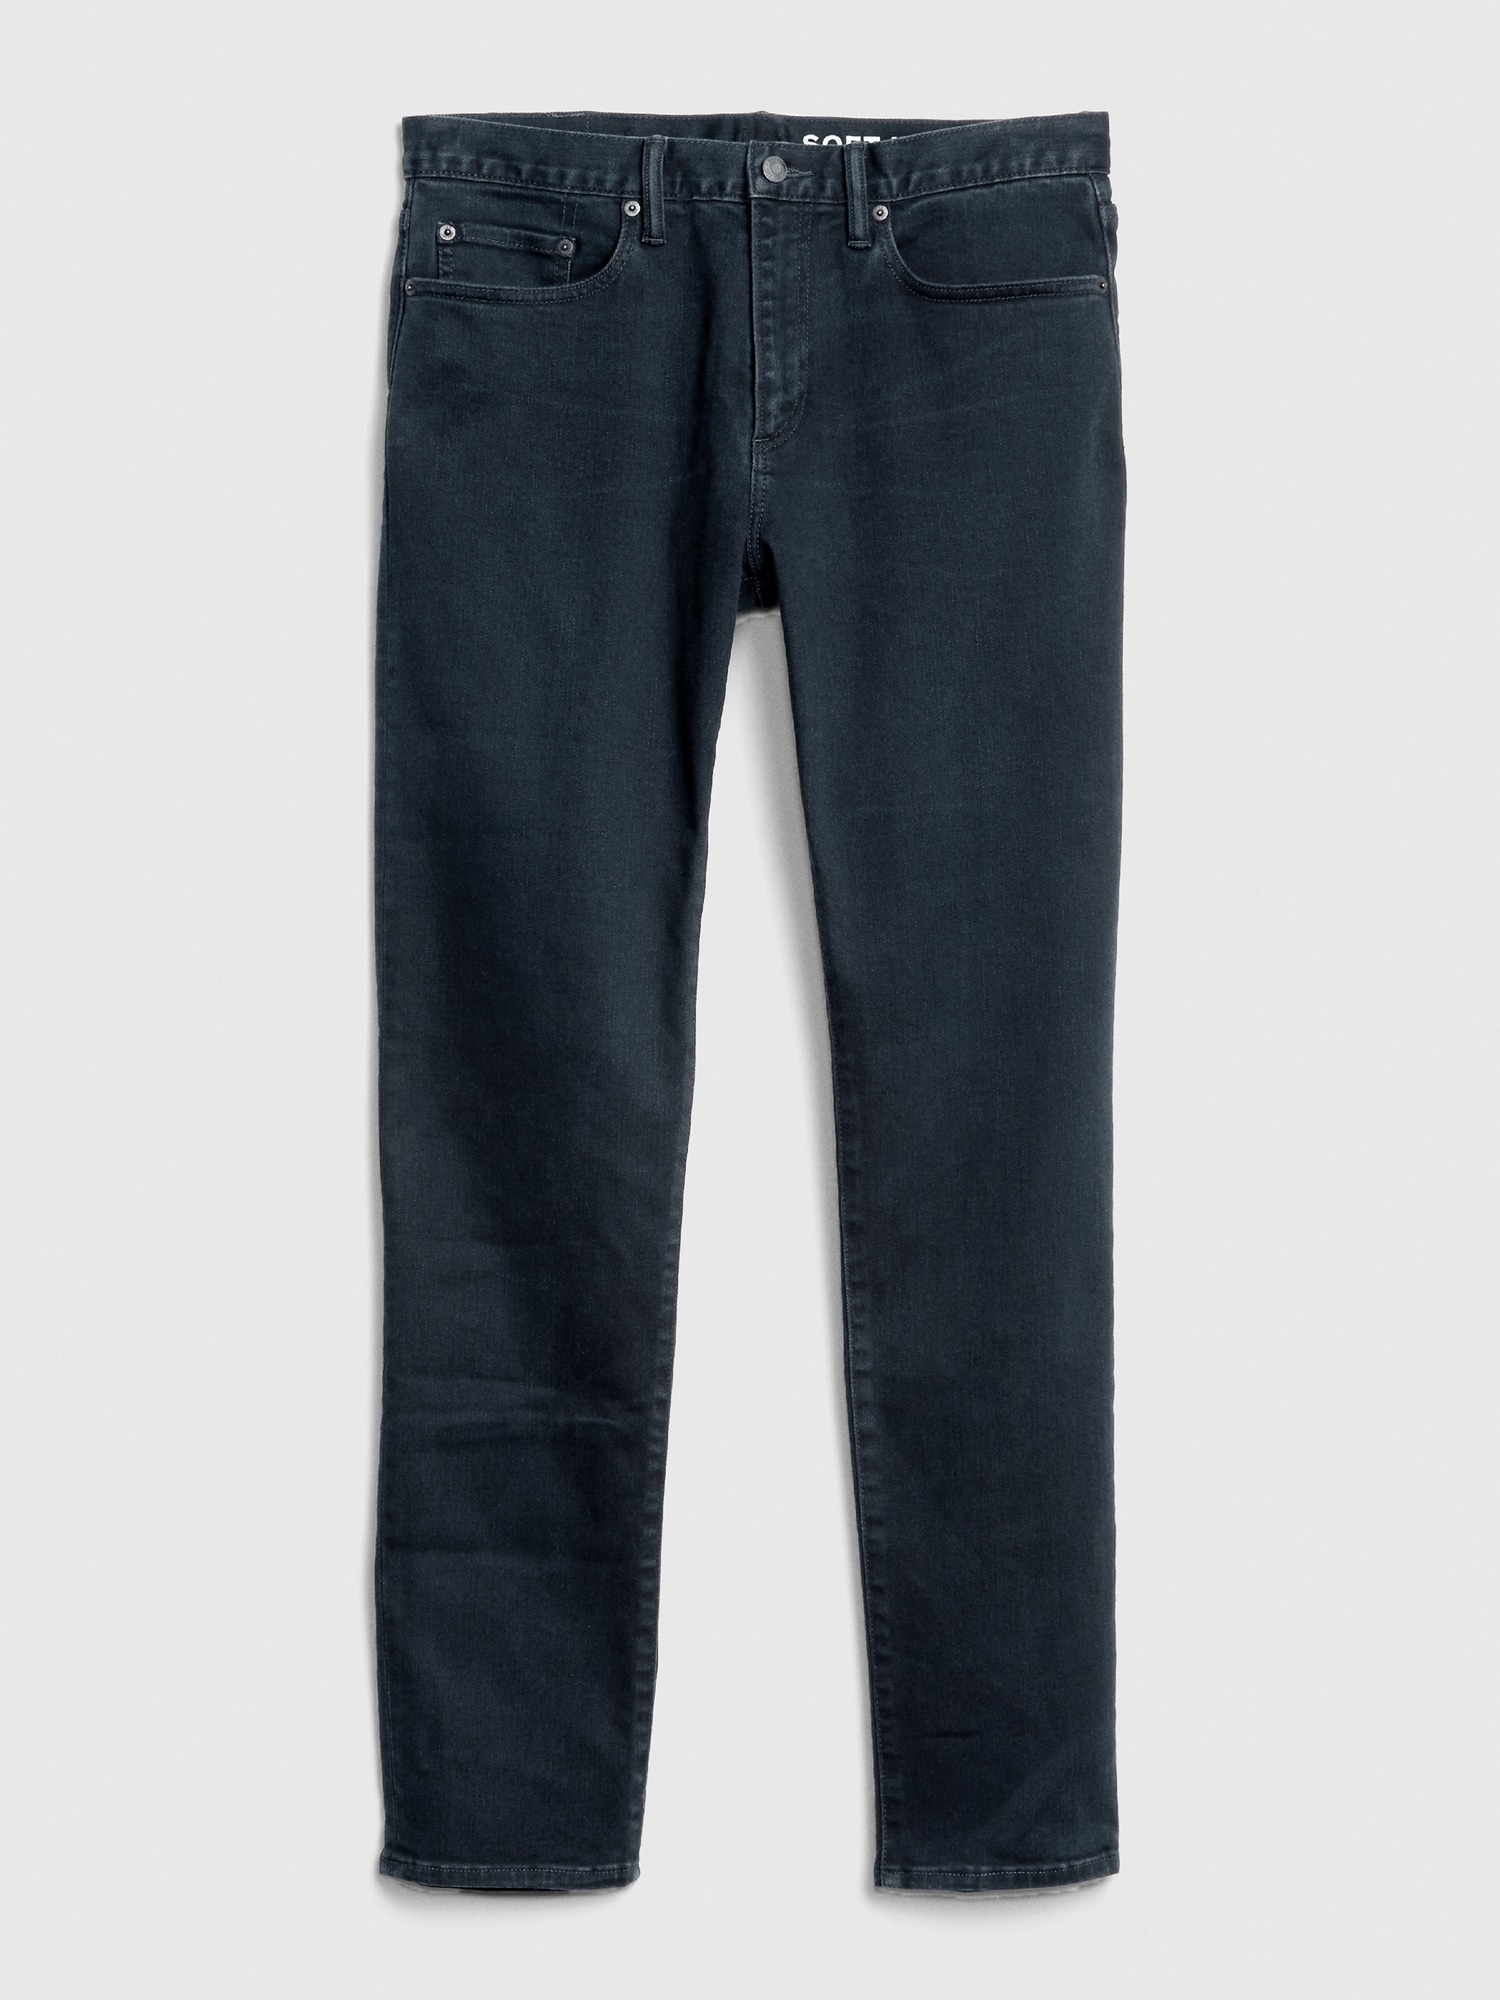 Gap Flex Soft Wear Slim Jean Pantolon. 5